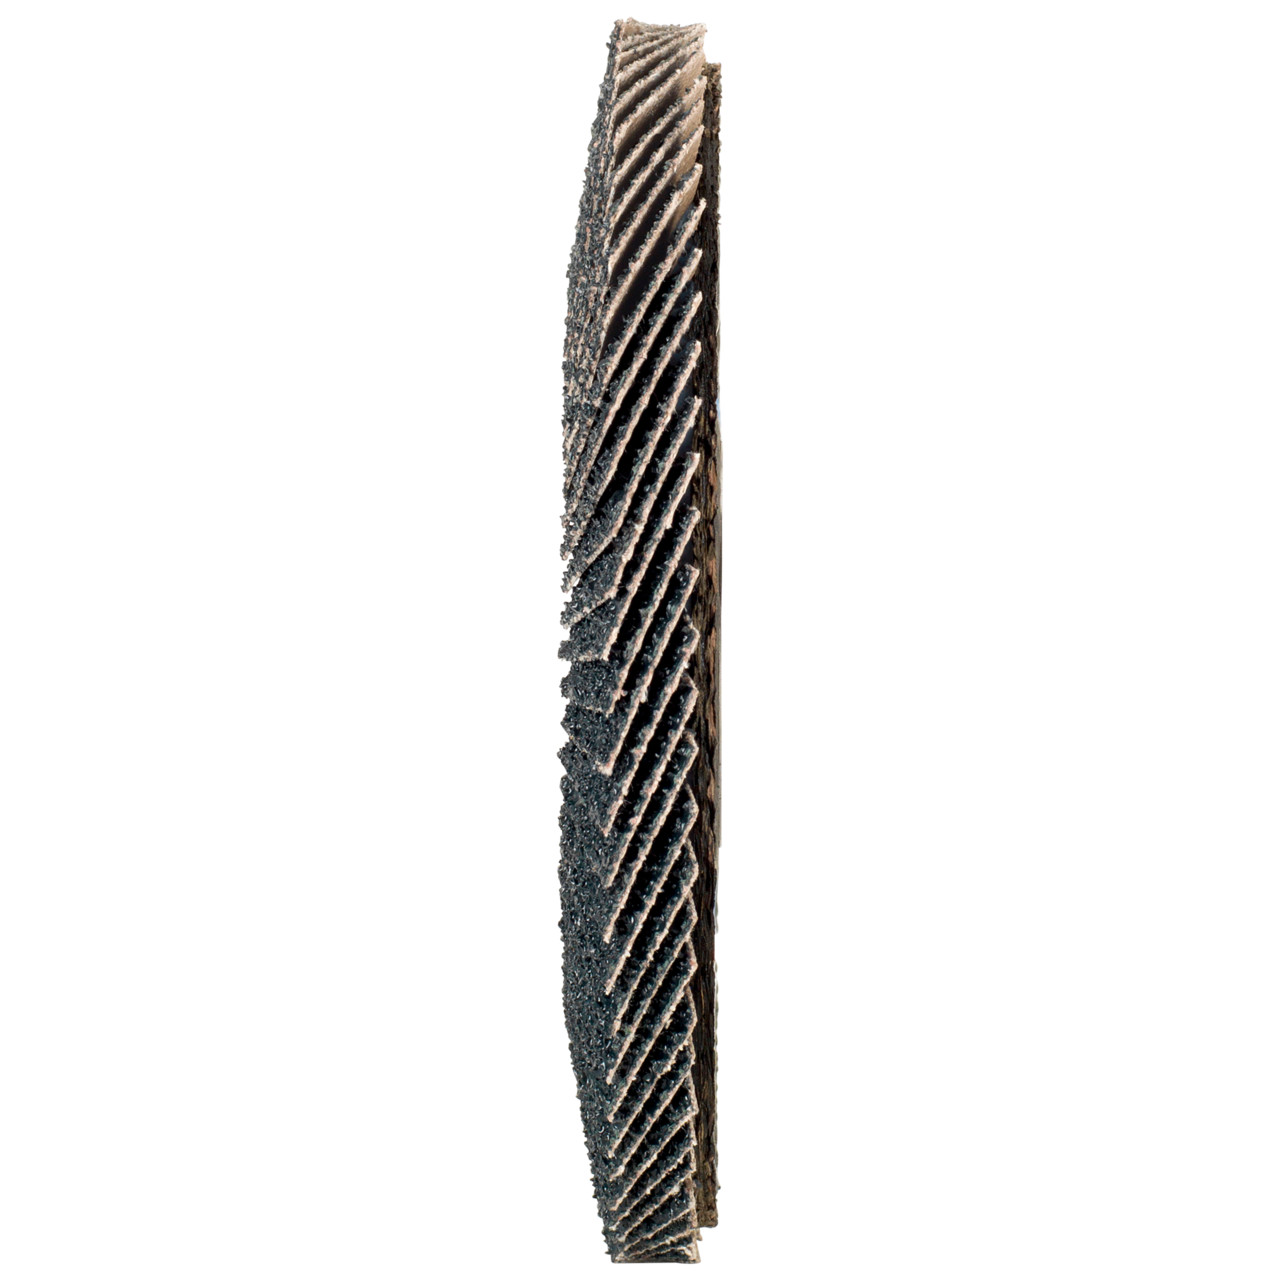 Rondella dentata Tyrolit DxH 125x22.2 2in1 per acciaio e acciaio inox, P120, forma: 28A - versione diritto (versione con corpo portante in fibra di vetro), Art. 645145